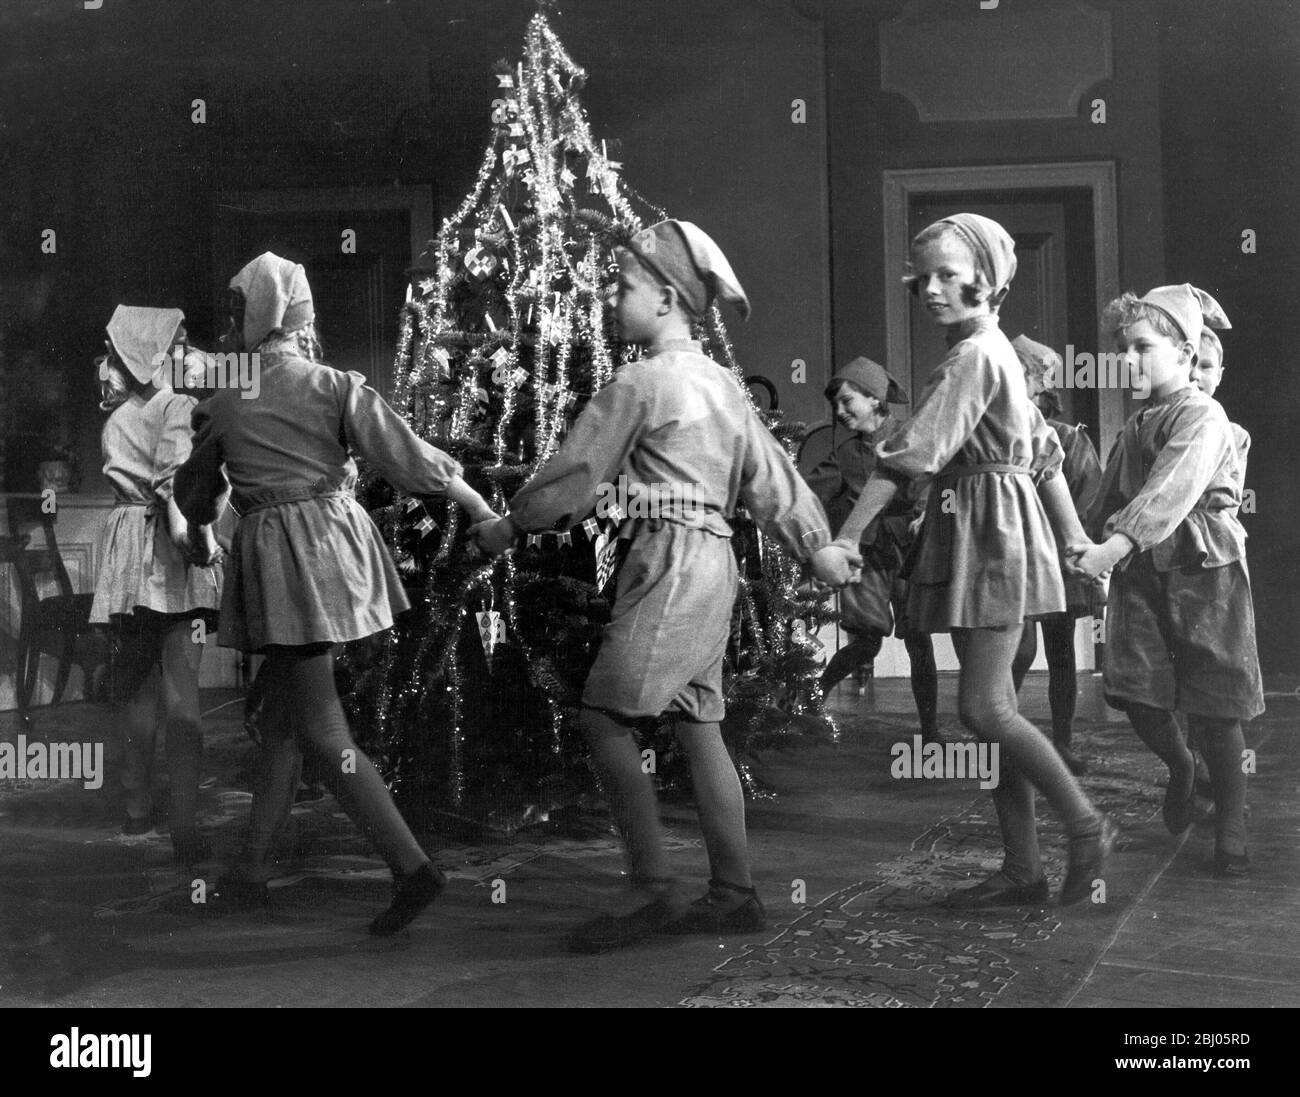 Was ist Weihnachten ohne Pixies? Die schüchternen kleinen Pixies, die erst in der Weihnachtszeit aufscheinen, um Menschen, die es verdienen, etwas Gutes zu tun. In einem alten Theater in Kopenhagen haben die Pixies bereits in einer guten alten Mode-Performance ein wenig sentimental, was sein muss wie der englische Peter Pan hier tanzen die Pixies um den Weihnachtsbaum 29. November 1965 Stockfoto